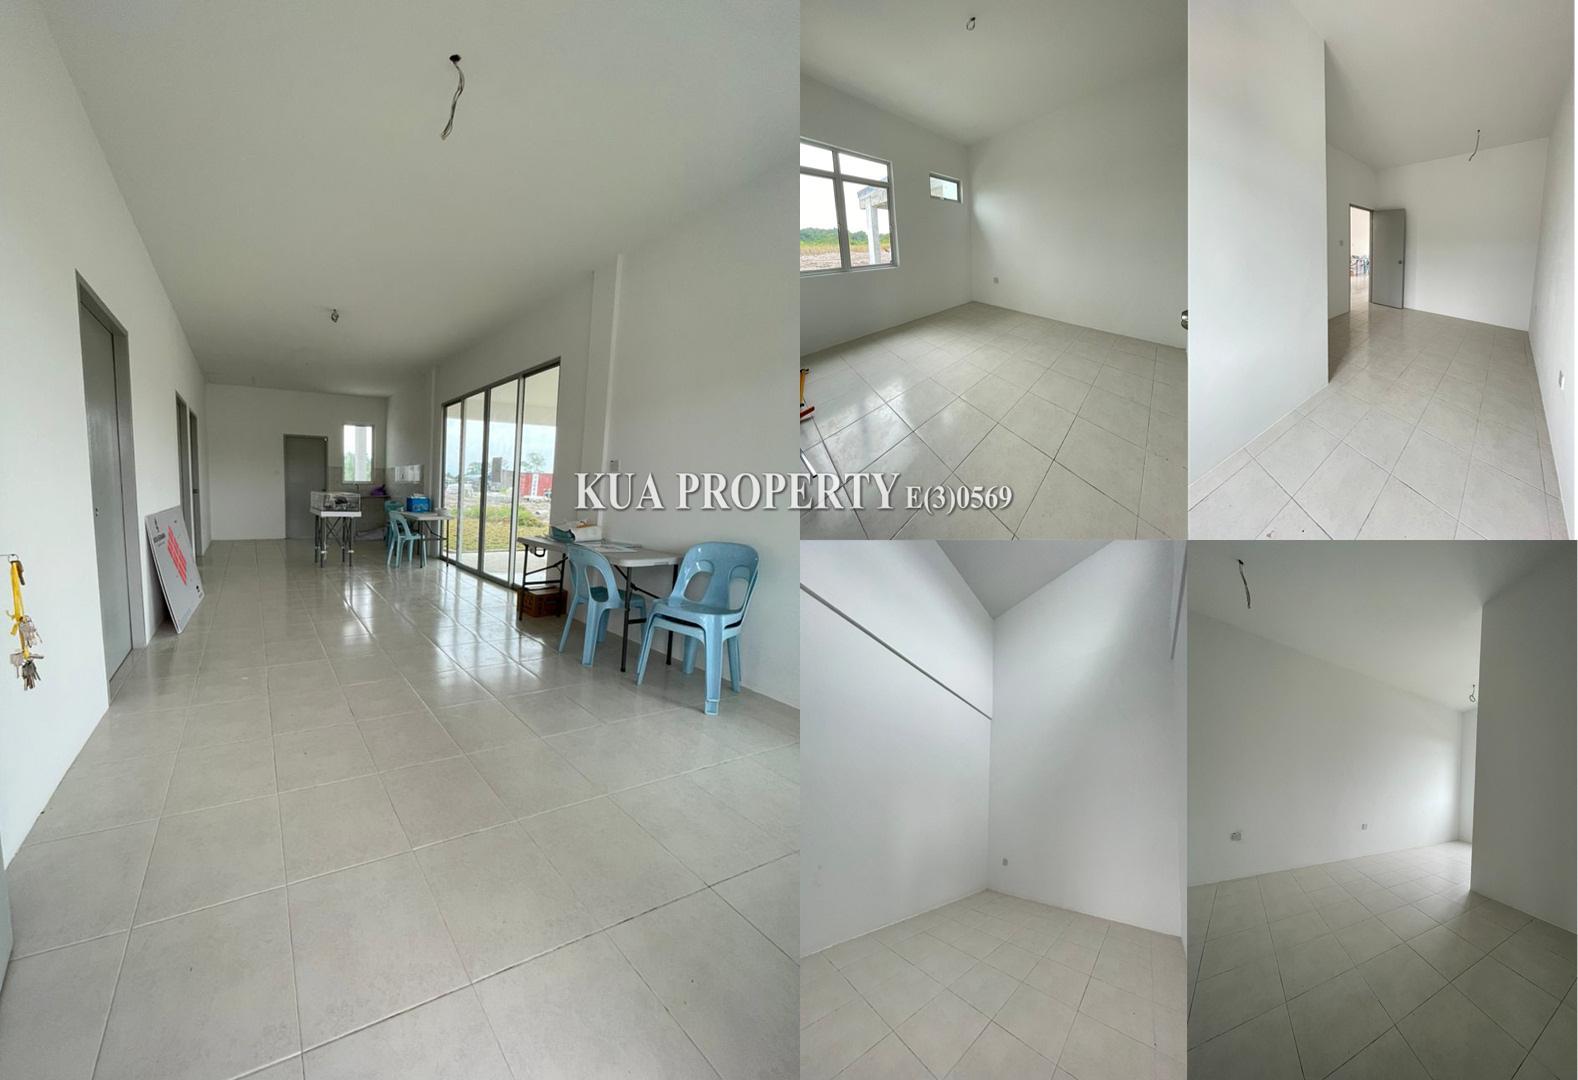 Brand new Single Storey Terrace Intermediate for Sale!at Kota Seramika Tapah, Siburan